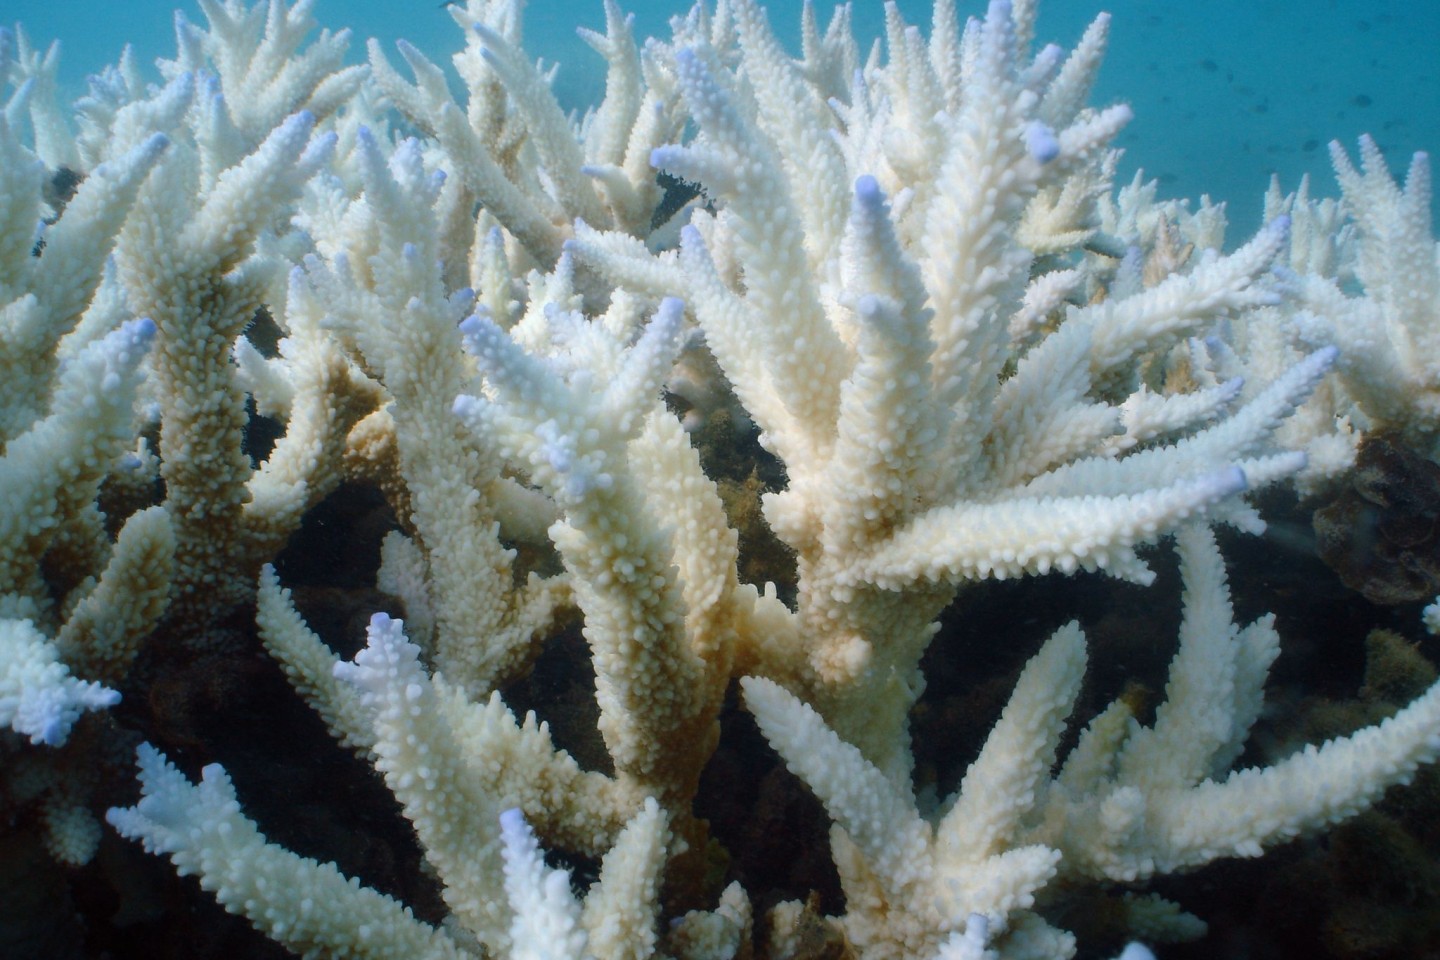 Immer mehr Korallenbänke mutieren zu einer Art unterseeischem Geisterwald. Statt sich in ihrer Farbenpracht zu zeigen, verlieren die Nesseltiere ihre Couleur und stehen fahl und weiß da.